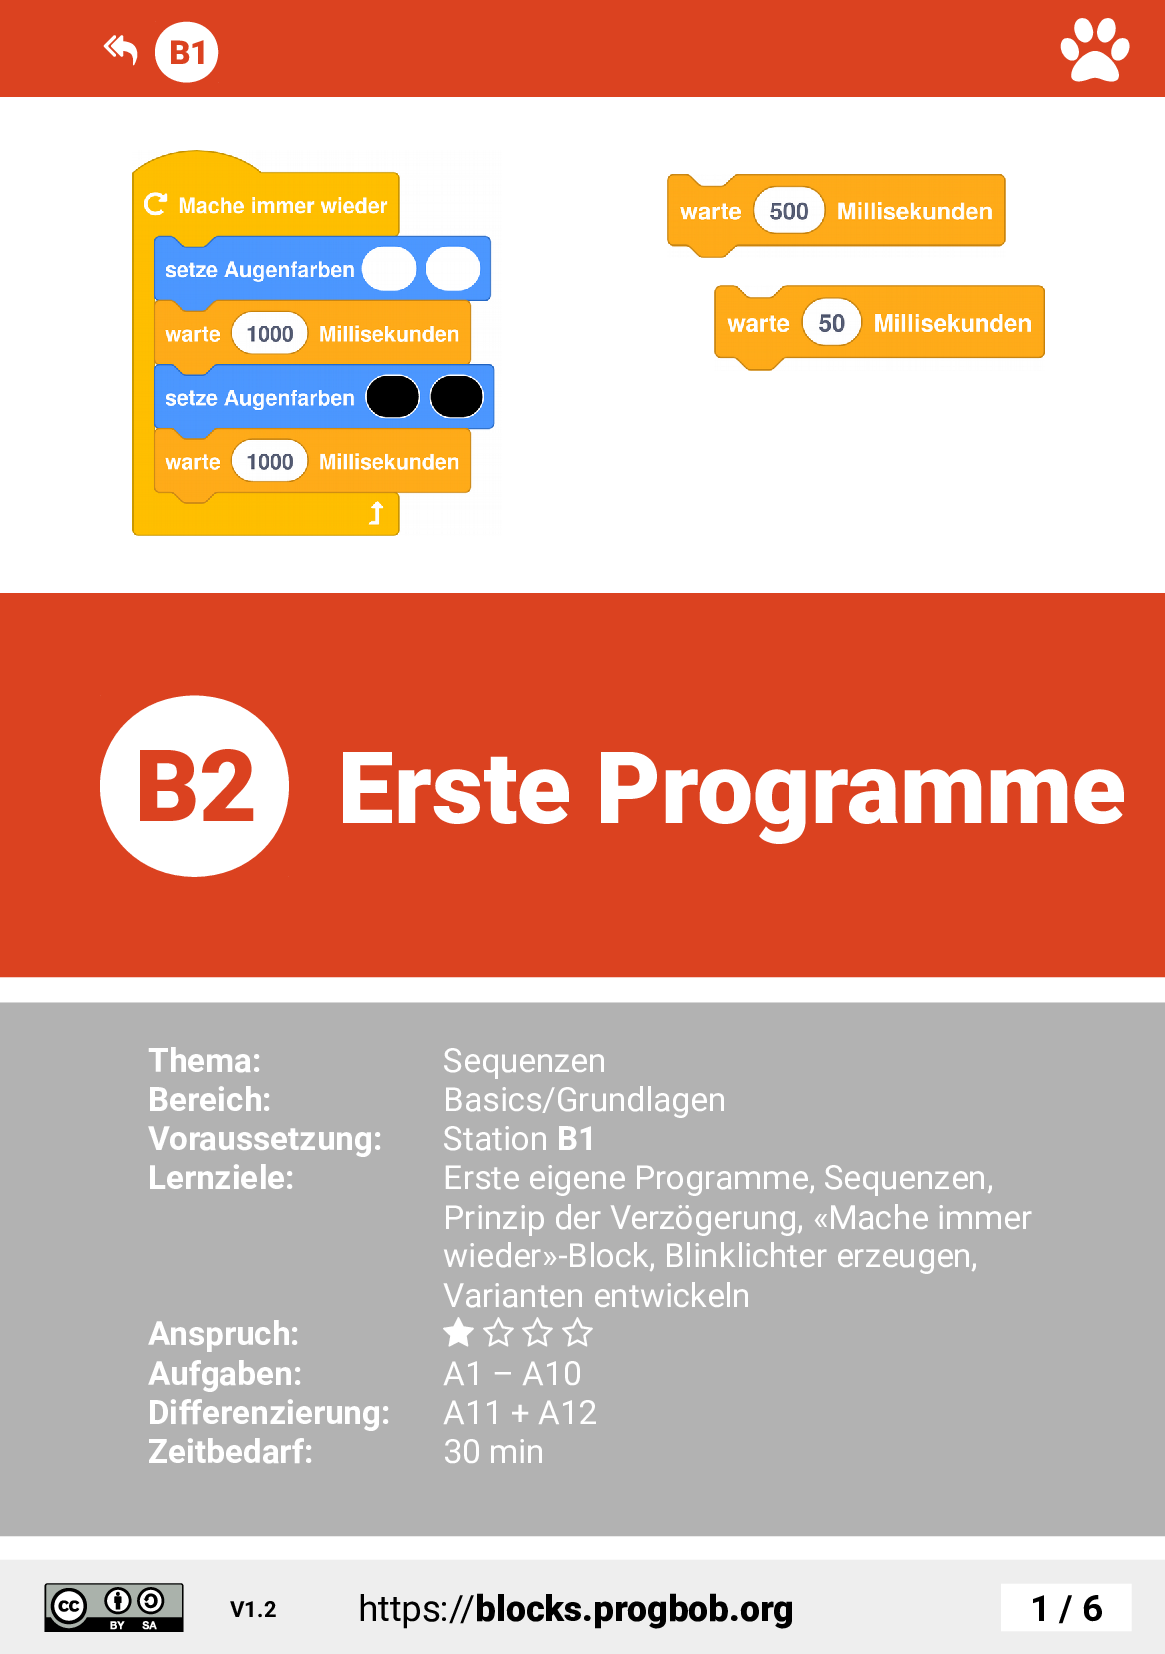 Station B2 - Erste Programme - Deckblatt